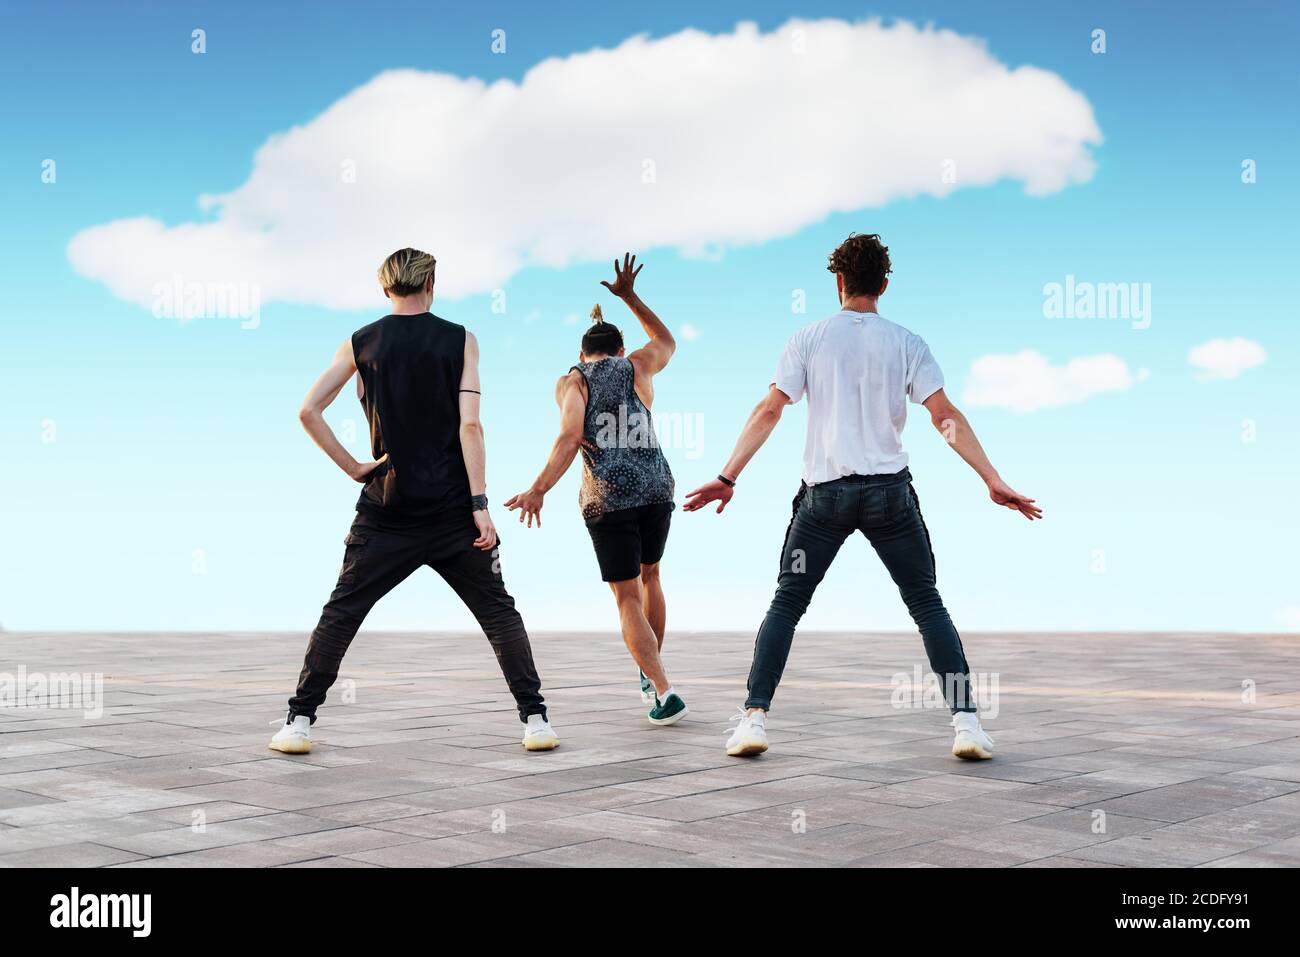 Drei unerkennbare junge Männer tanzen Sporttänze, Hip-Hop oder Break-Dance im Freien. Teenage Lifestyle und urbane Jugendkultur Konzept. Straßentanz. Stockfoto